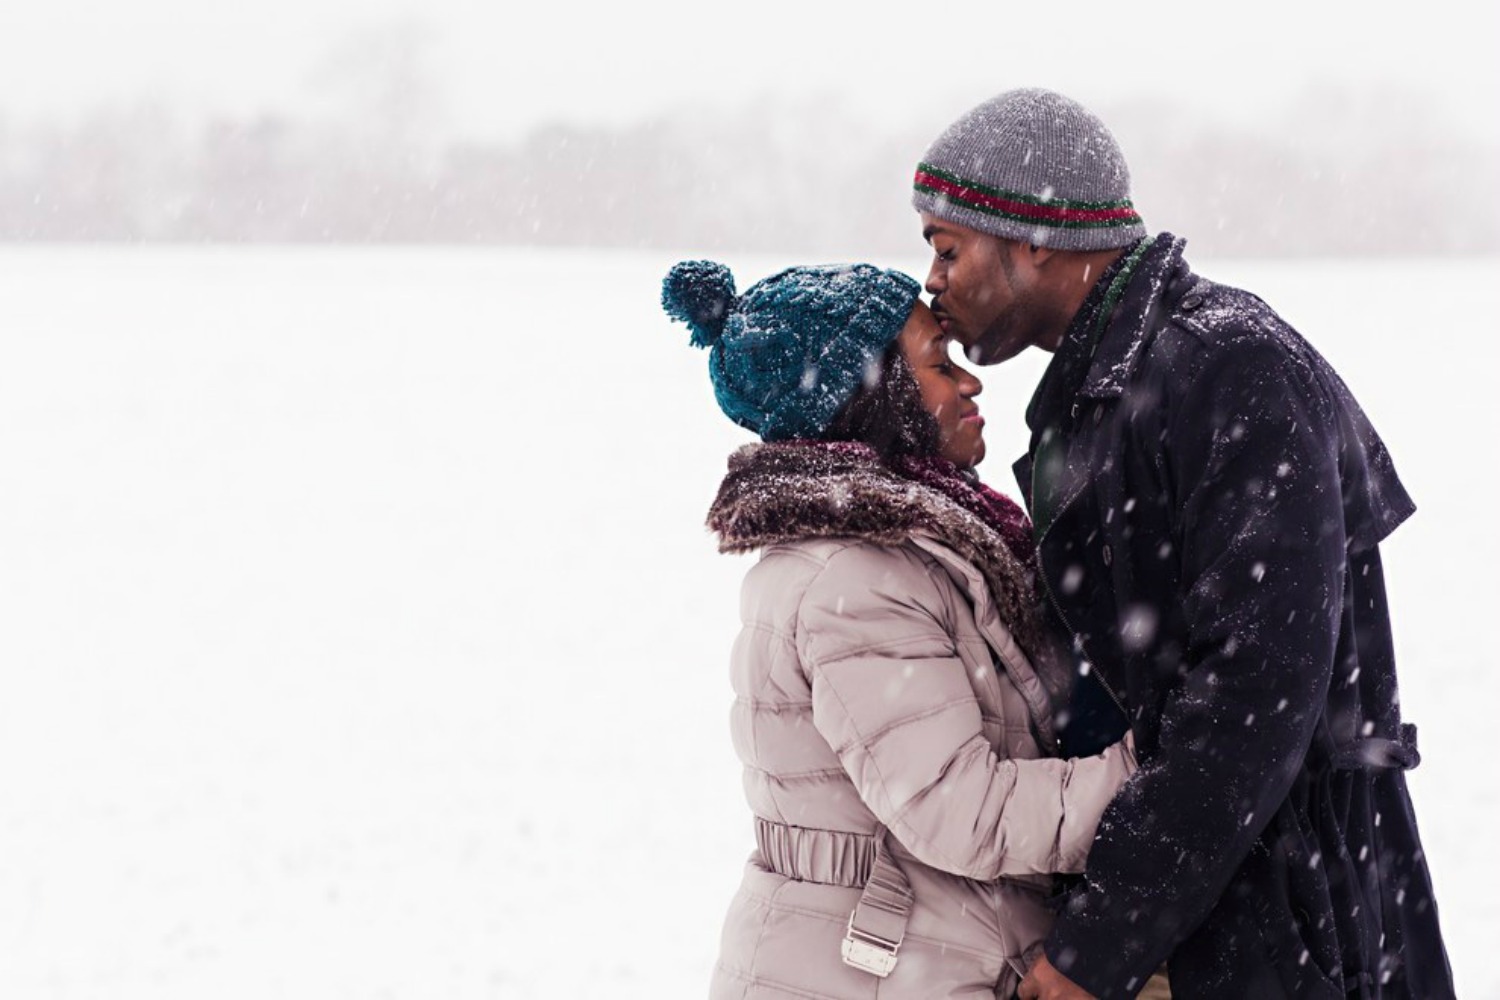 Un temporal de nieve es la ocasión perfecta para una sesión de fotos románticas